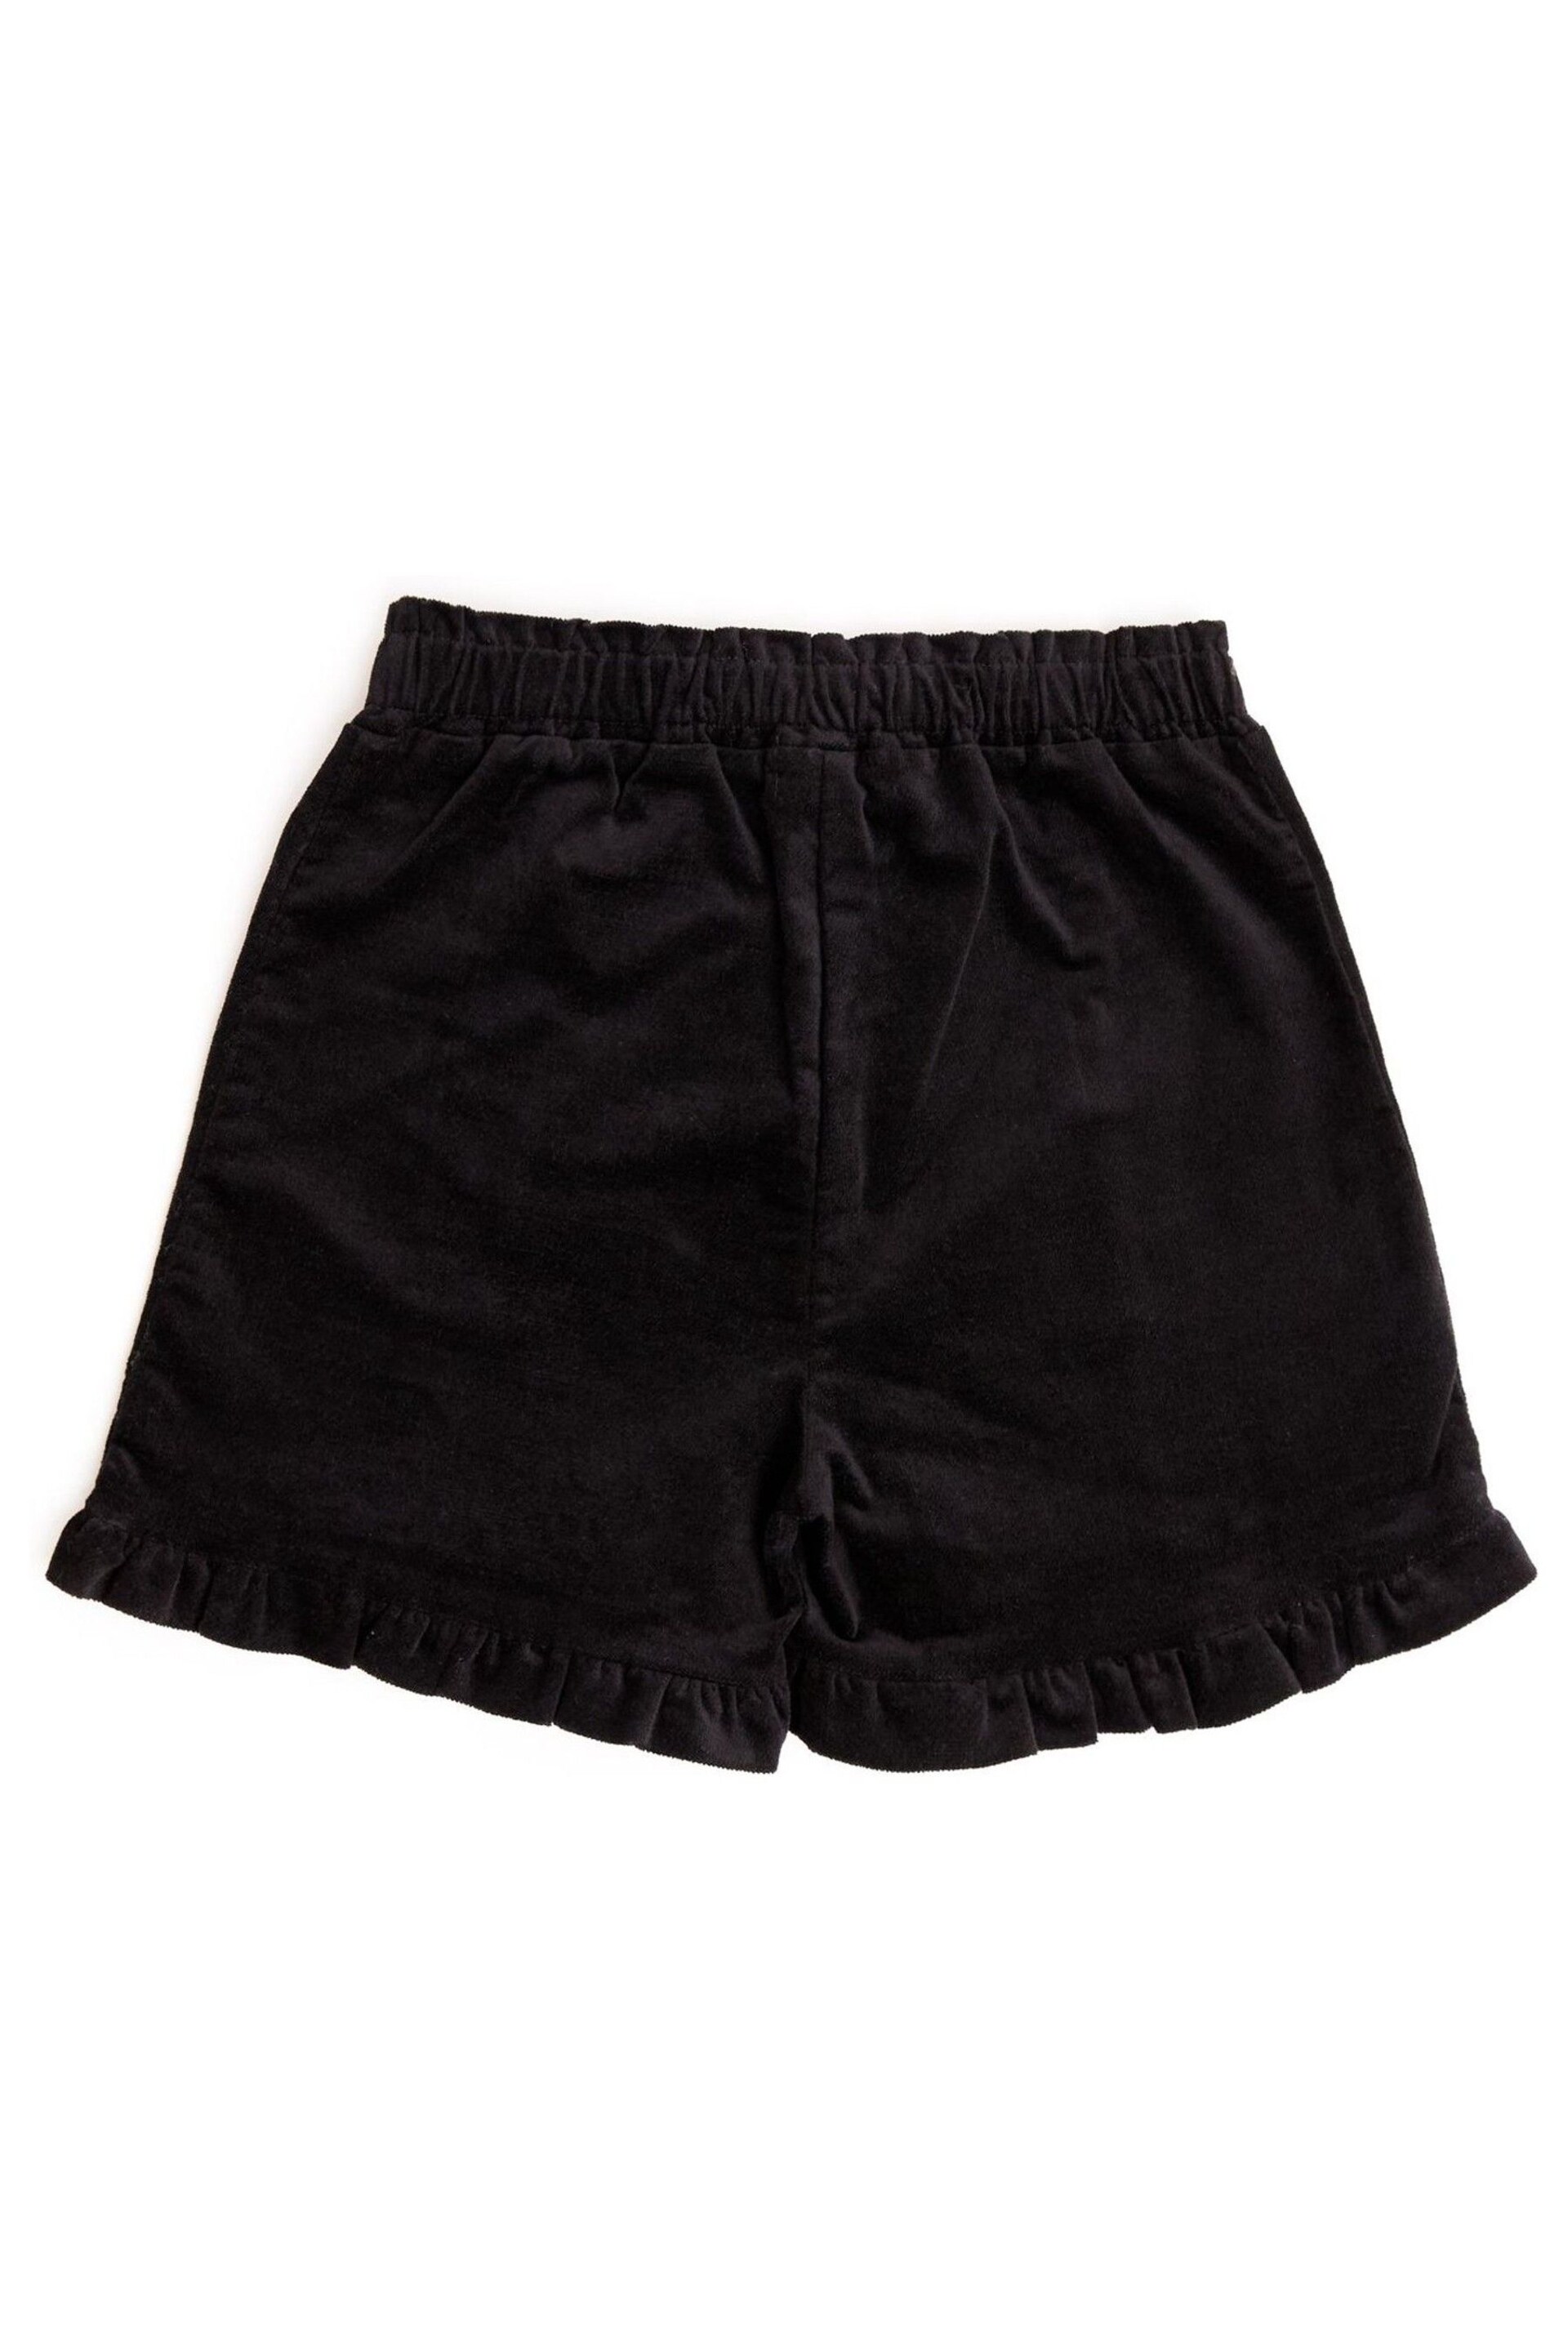 Nicole Miller Velvet Black Shorts - Image 2 of 3